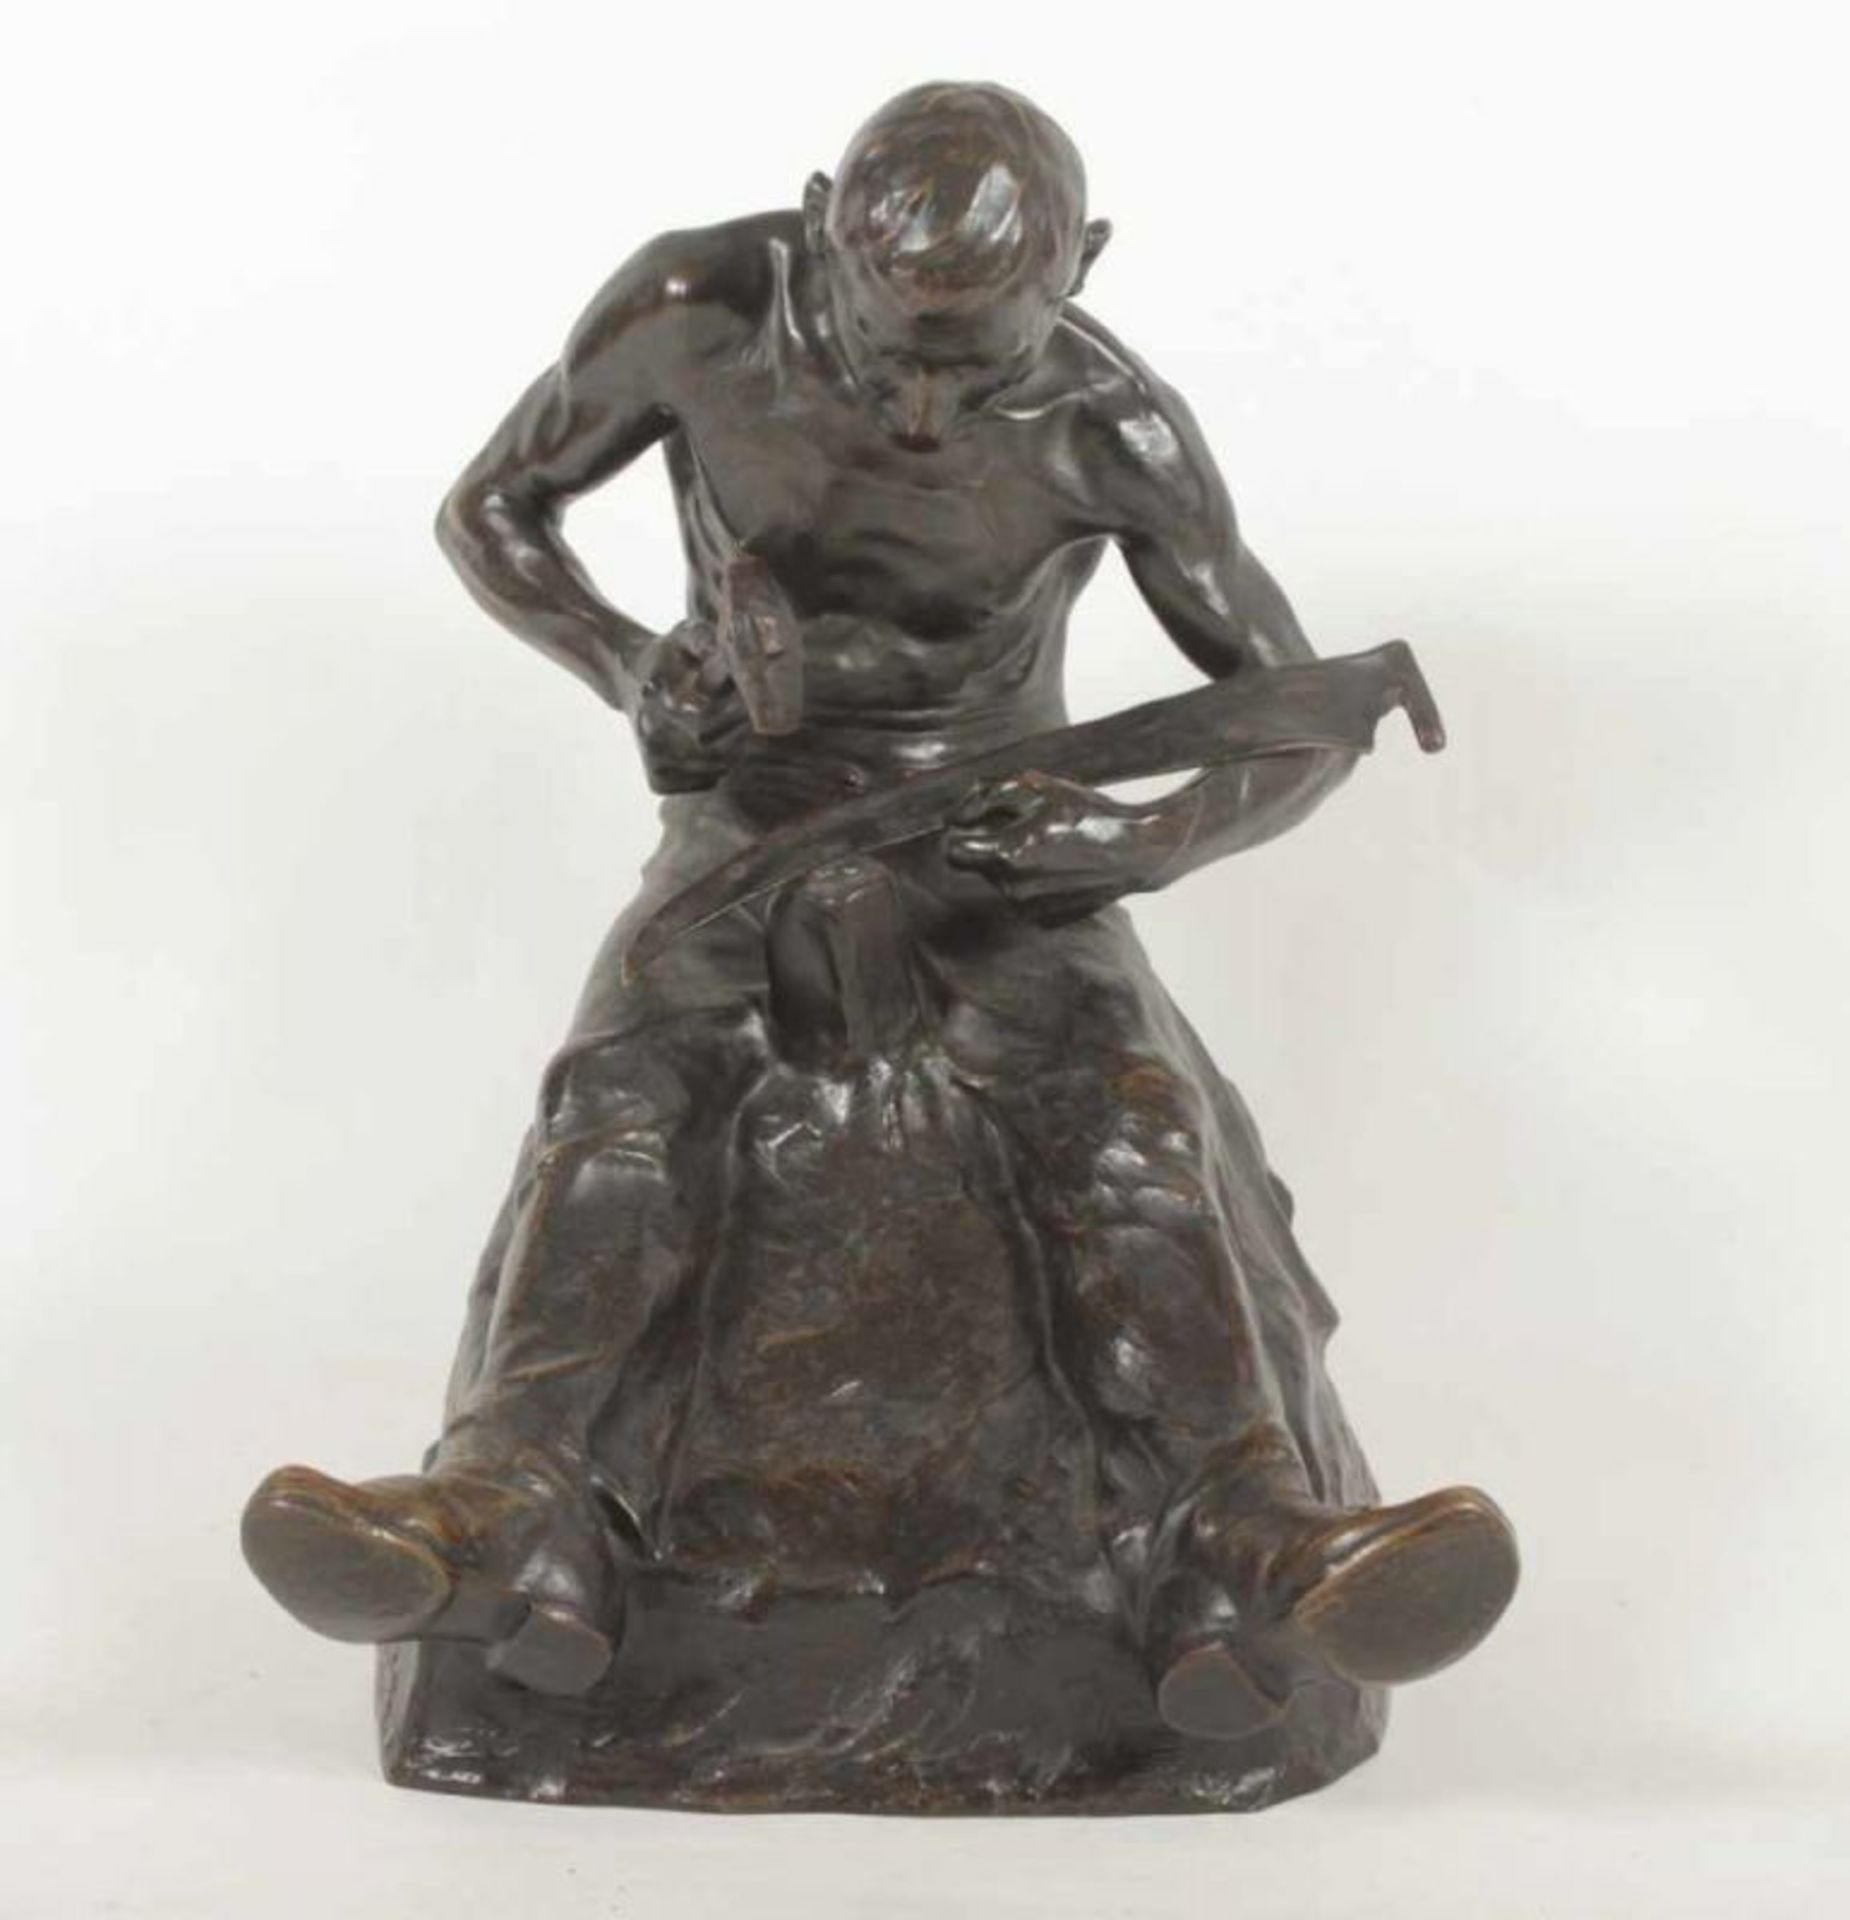 POHL, Adolf Josef, "Sitzender Arbeiter beim Dengeln einer Sense", Bronze, H 54, am Sockel signiert